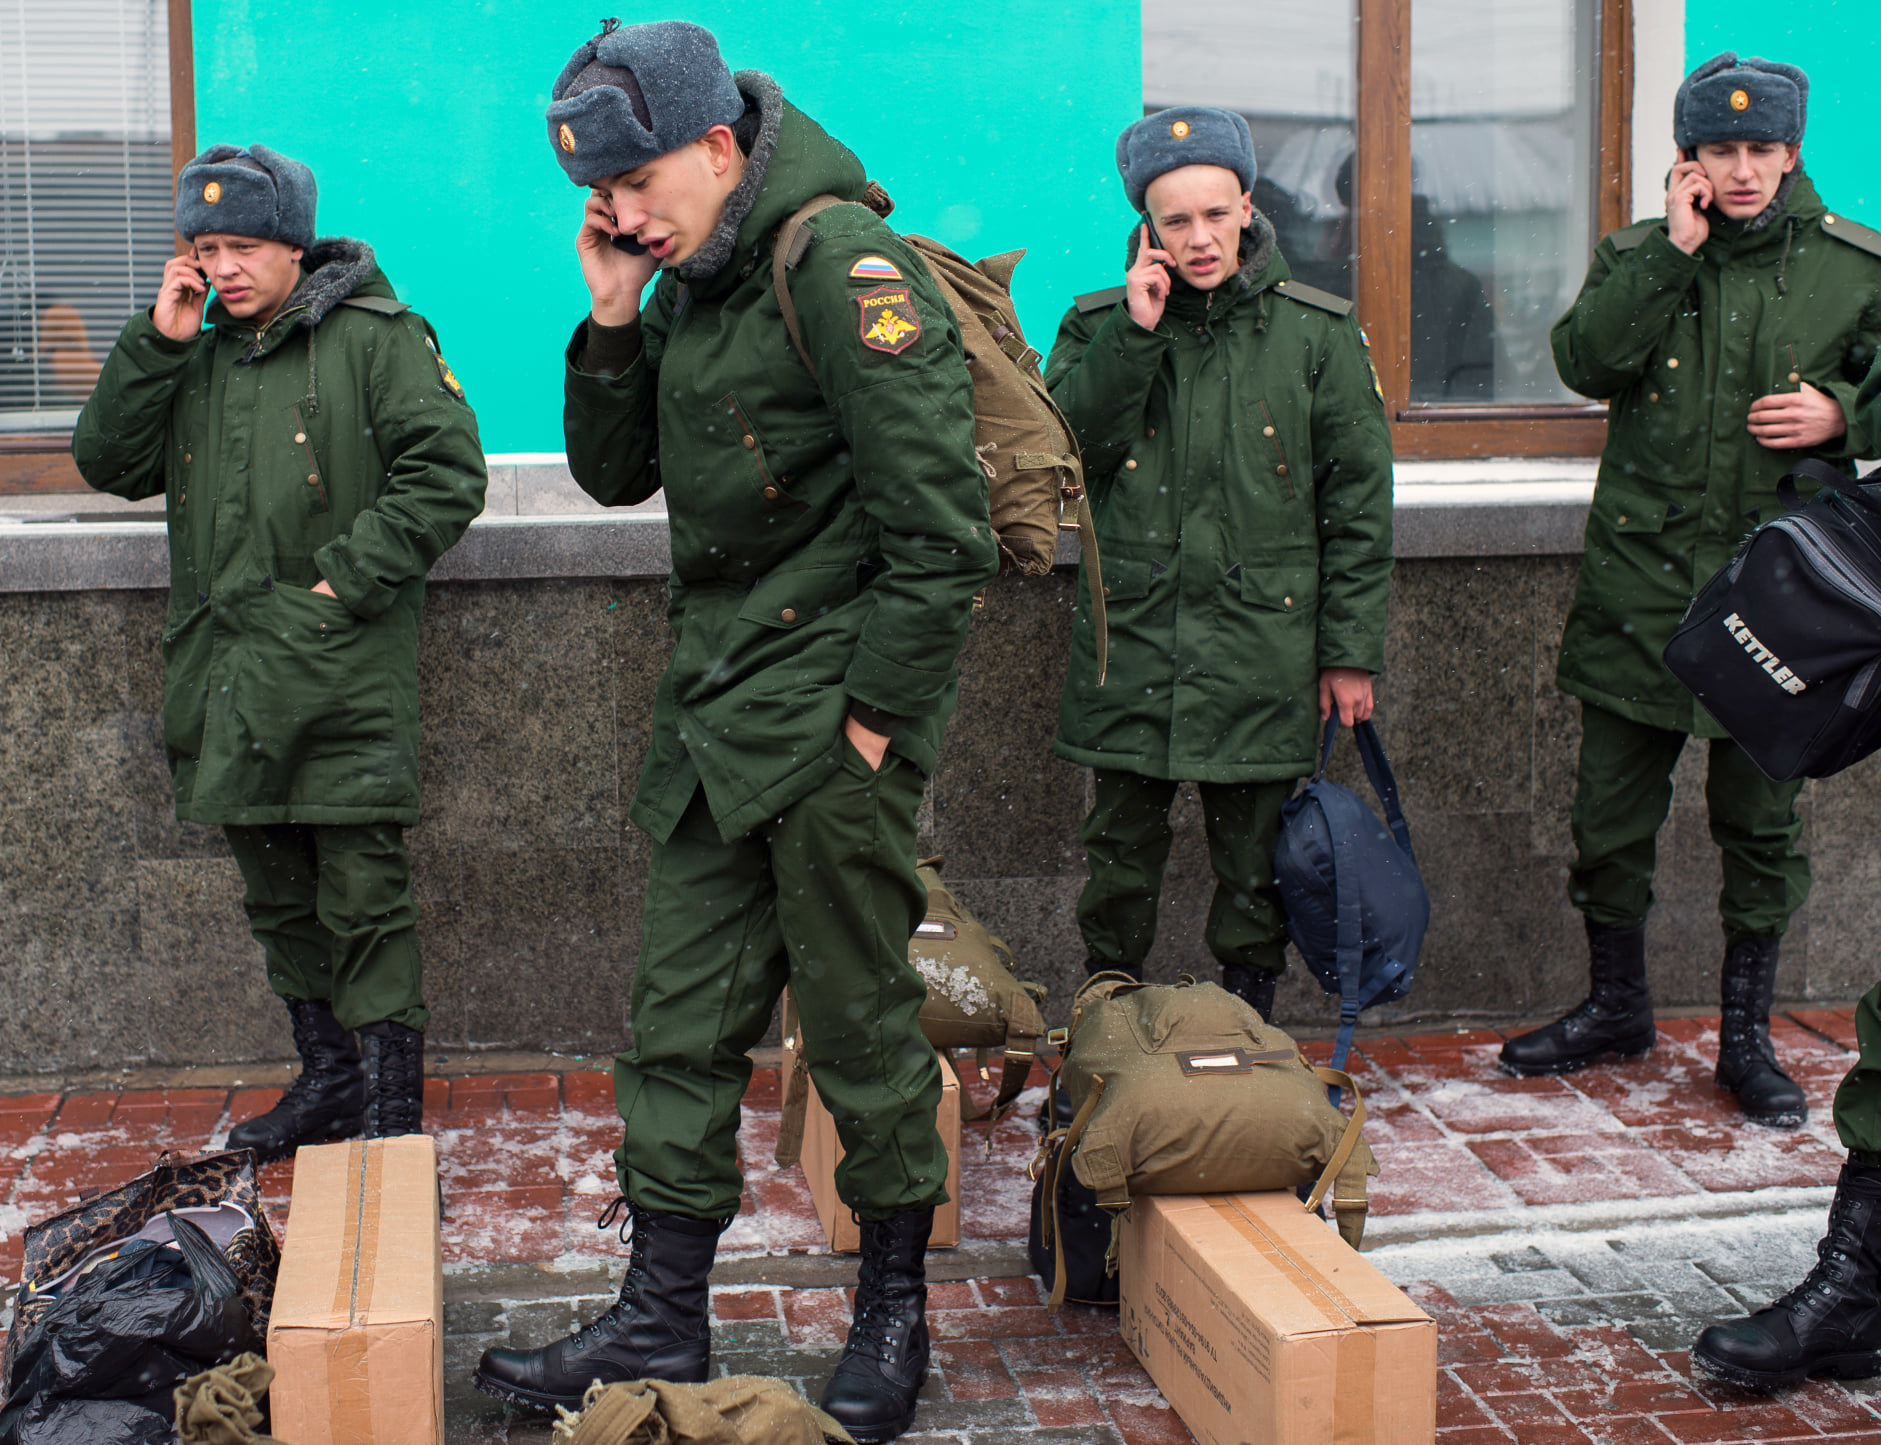 Злой одессит: Россия проводит интенсивную информационную подготовку по дестабилизации и дискредитации Украины